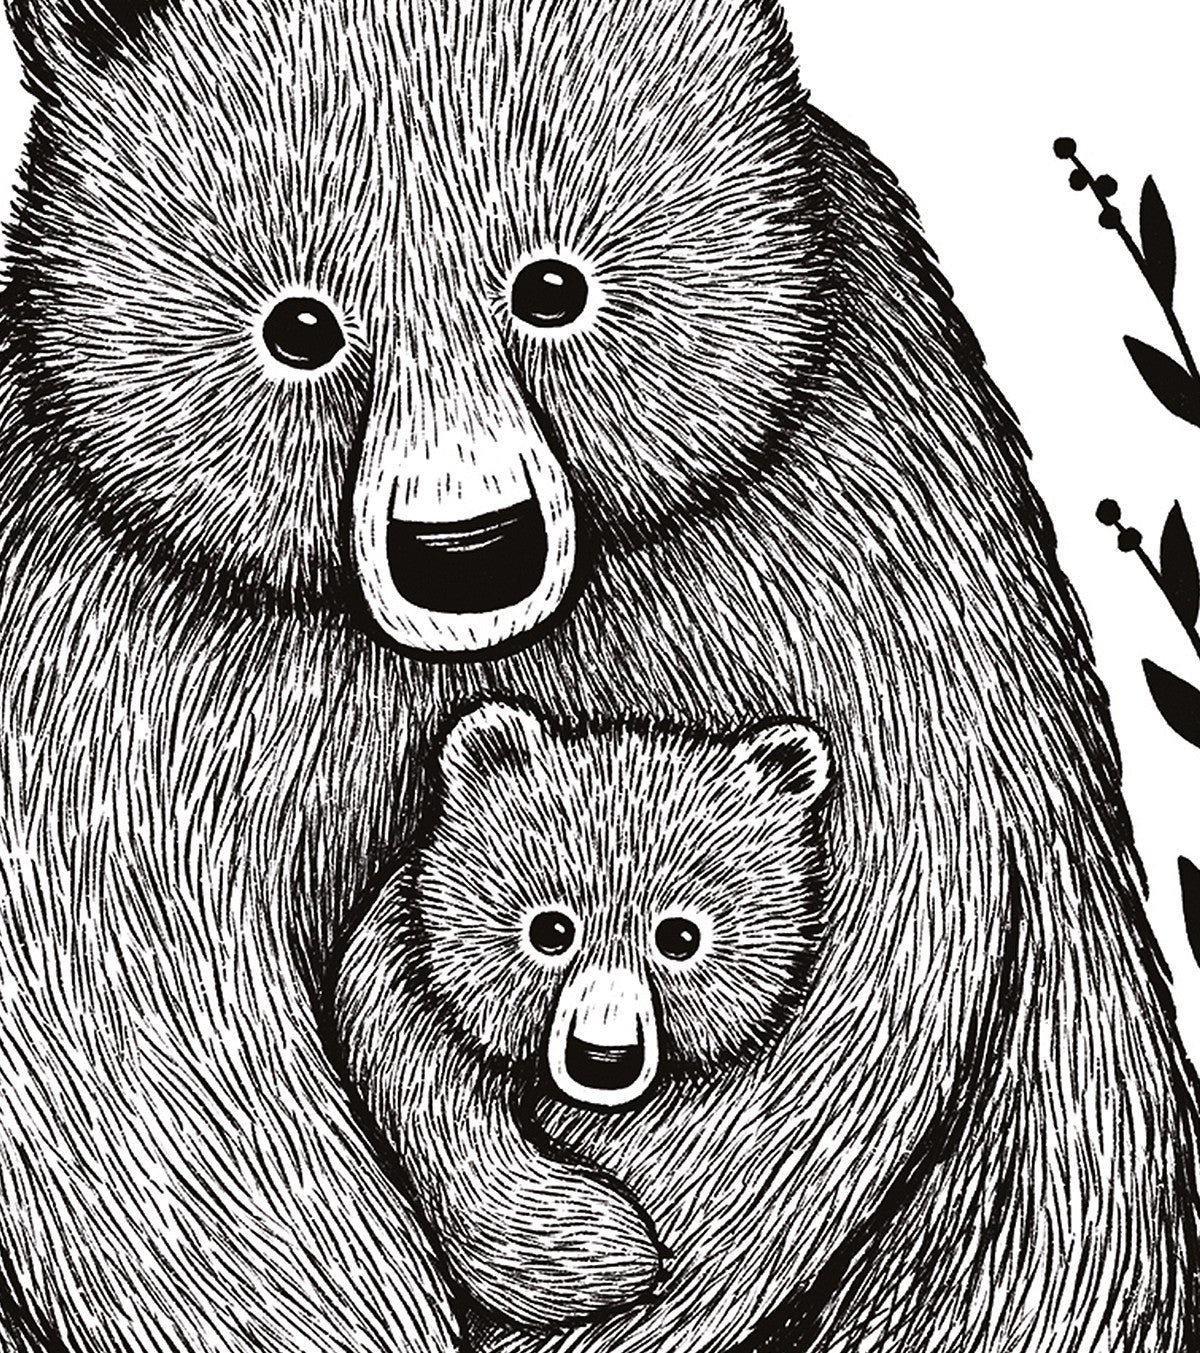 ROMANIAN HILLS - Children's poster - Bear family